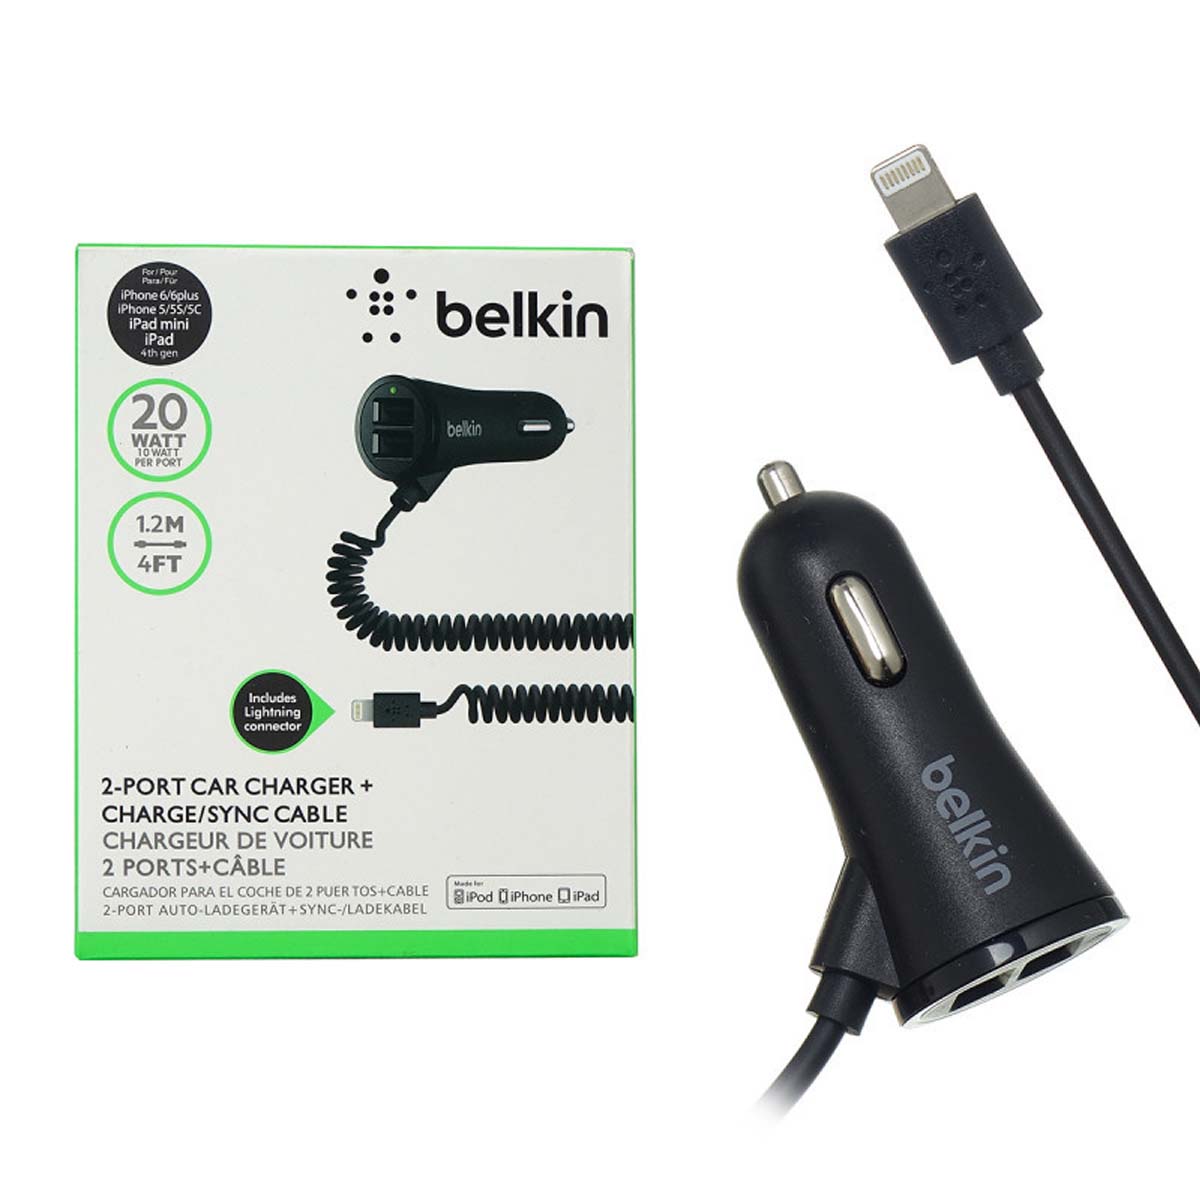 АЗУ (Автомобильное зарядное устройство) Belkin c кабелем APPLE Lightning 8 pin, 20W, 2 USB, цвет черный